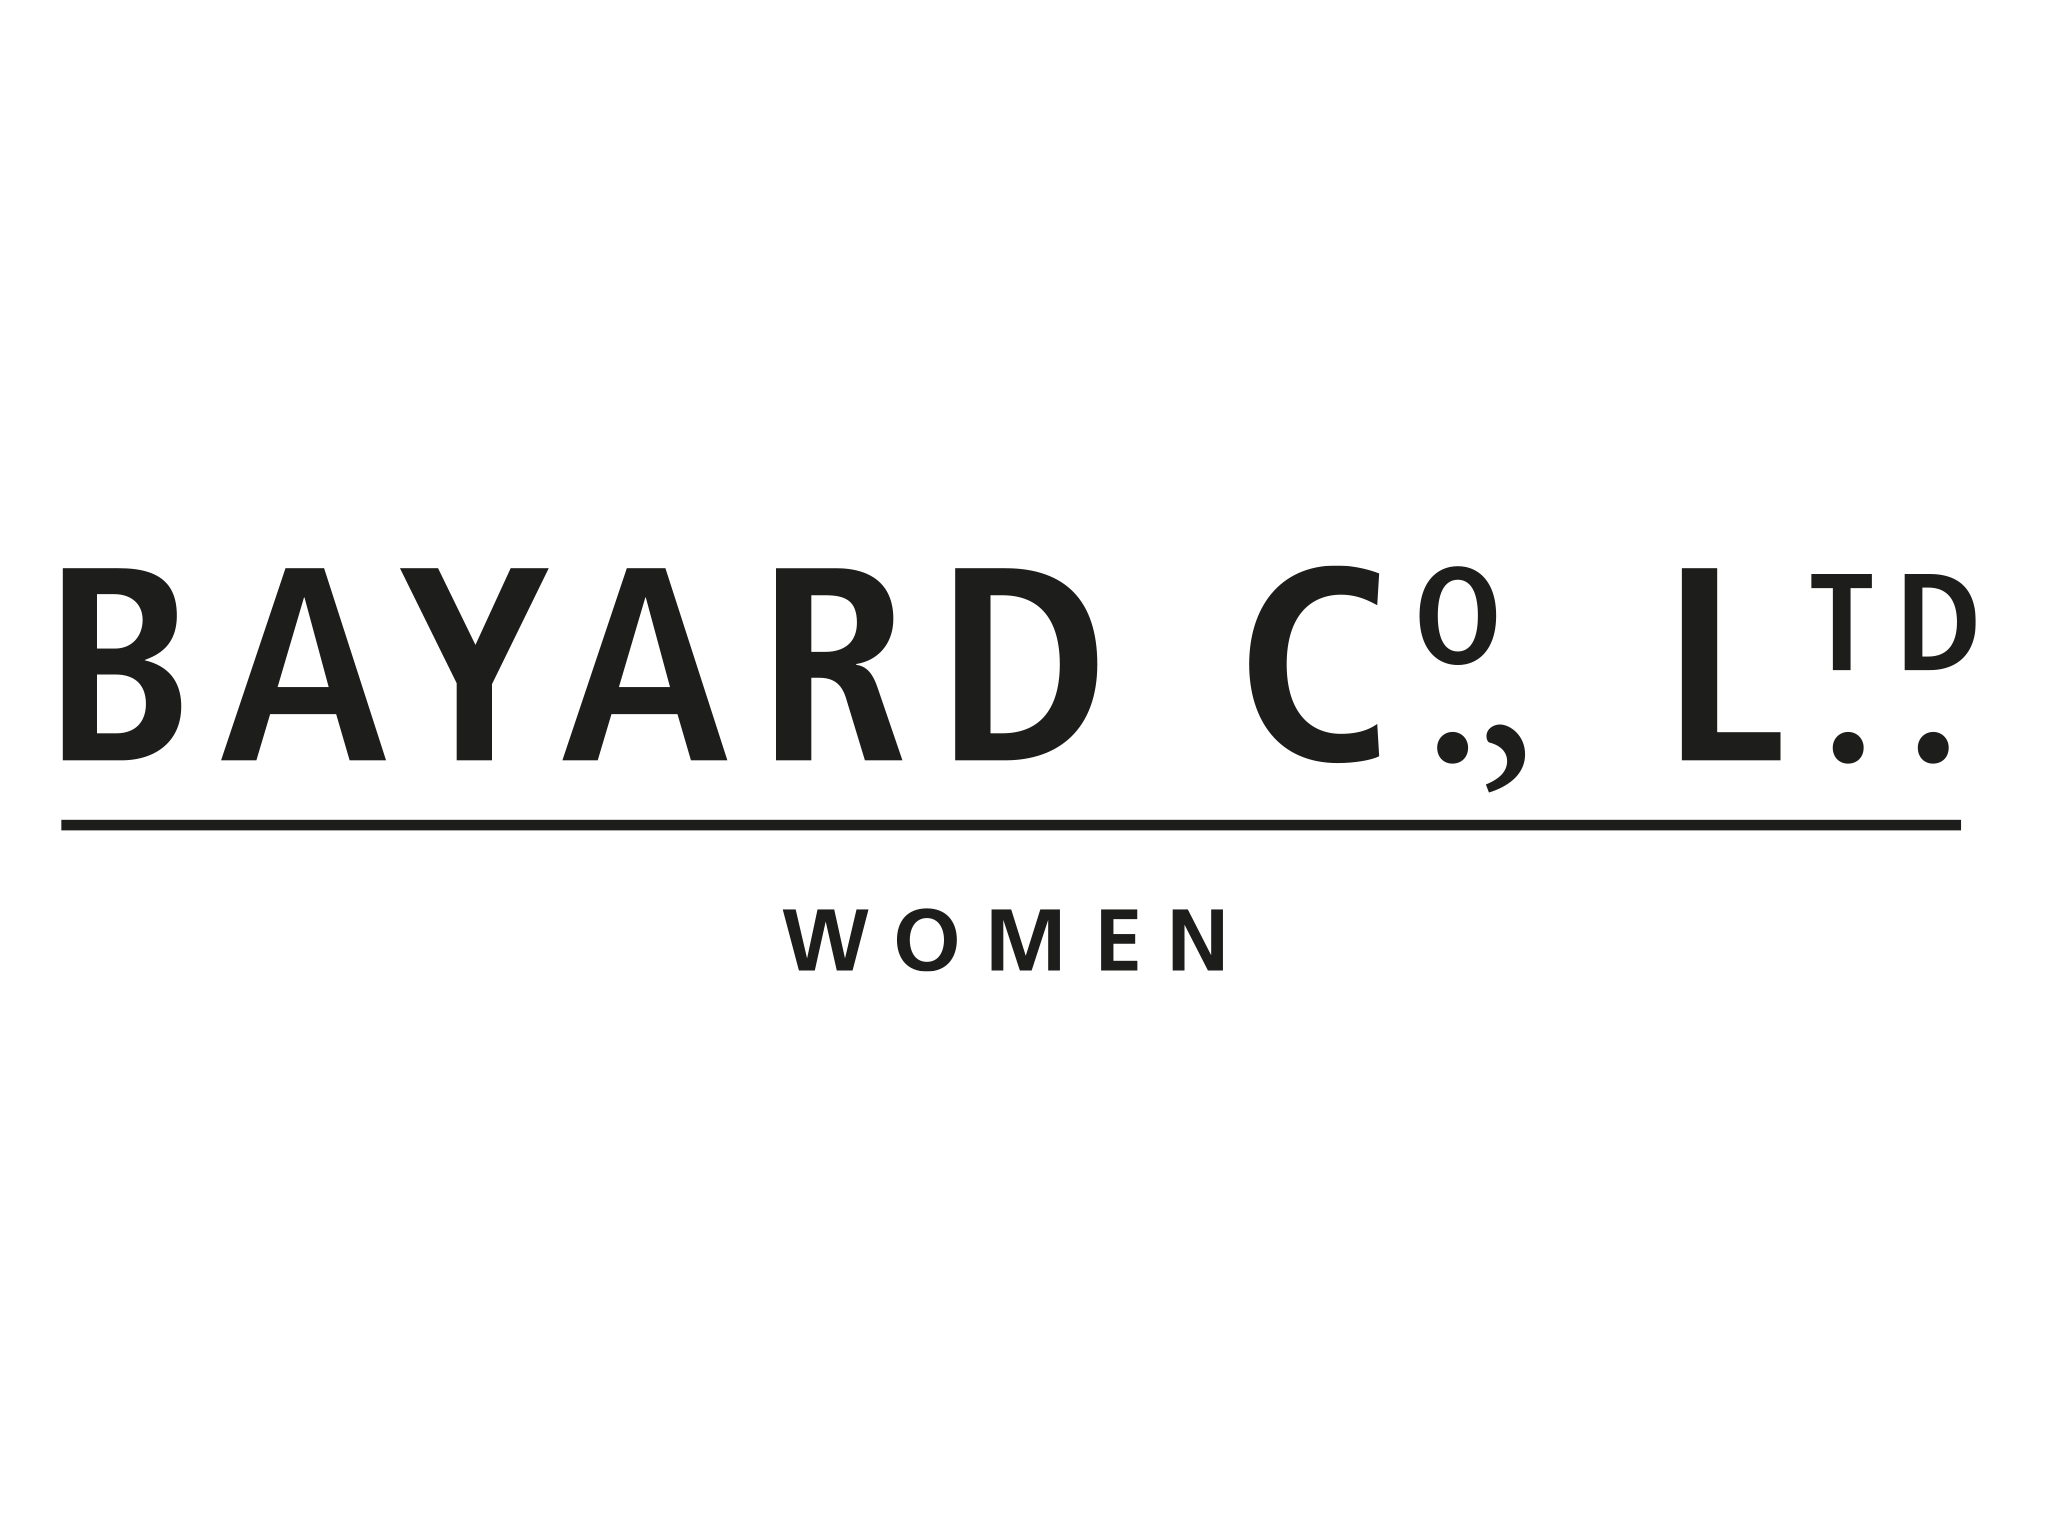 Bayard Women